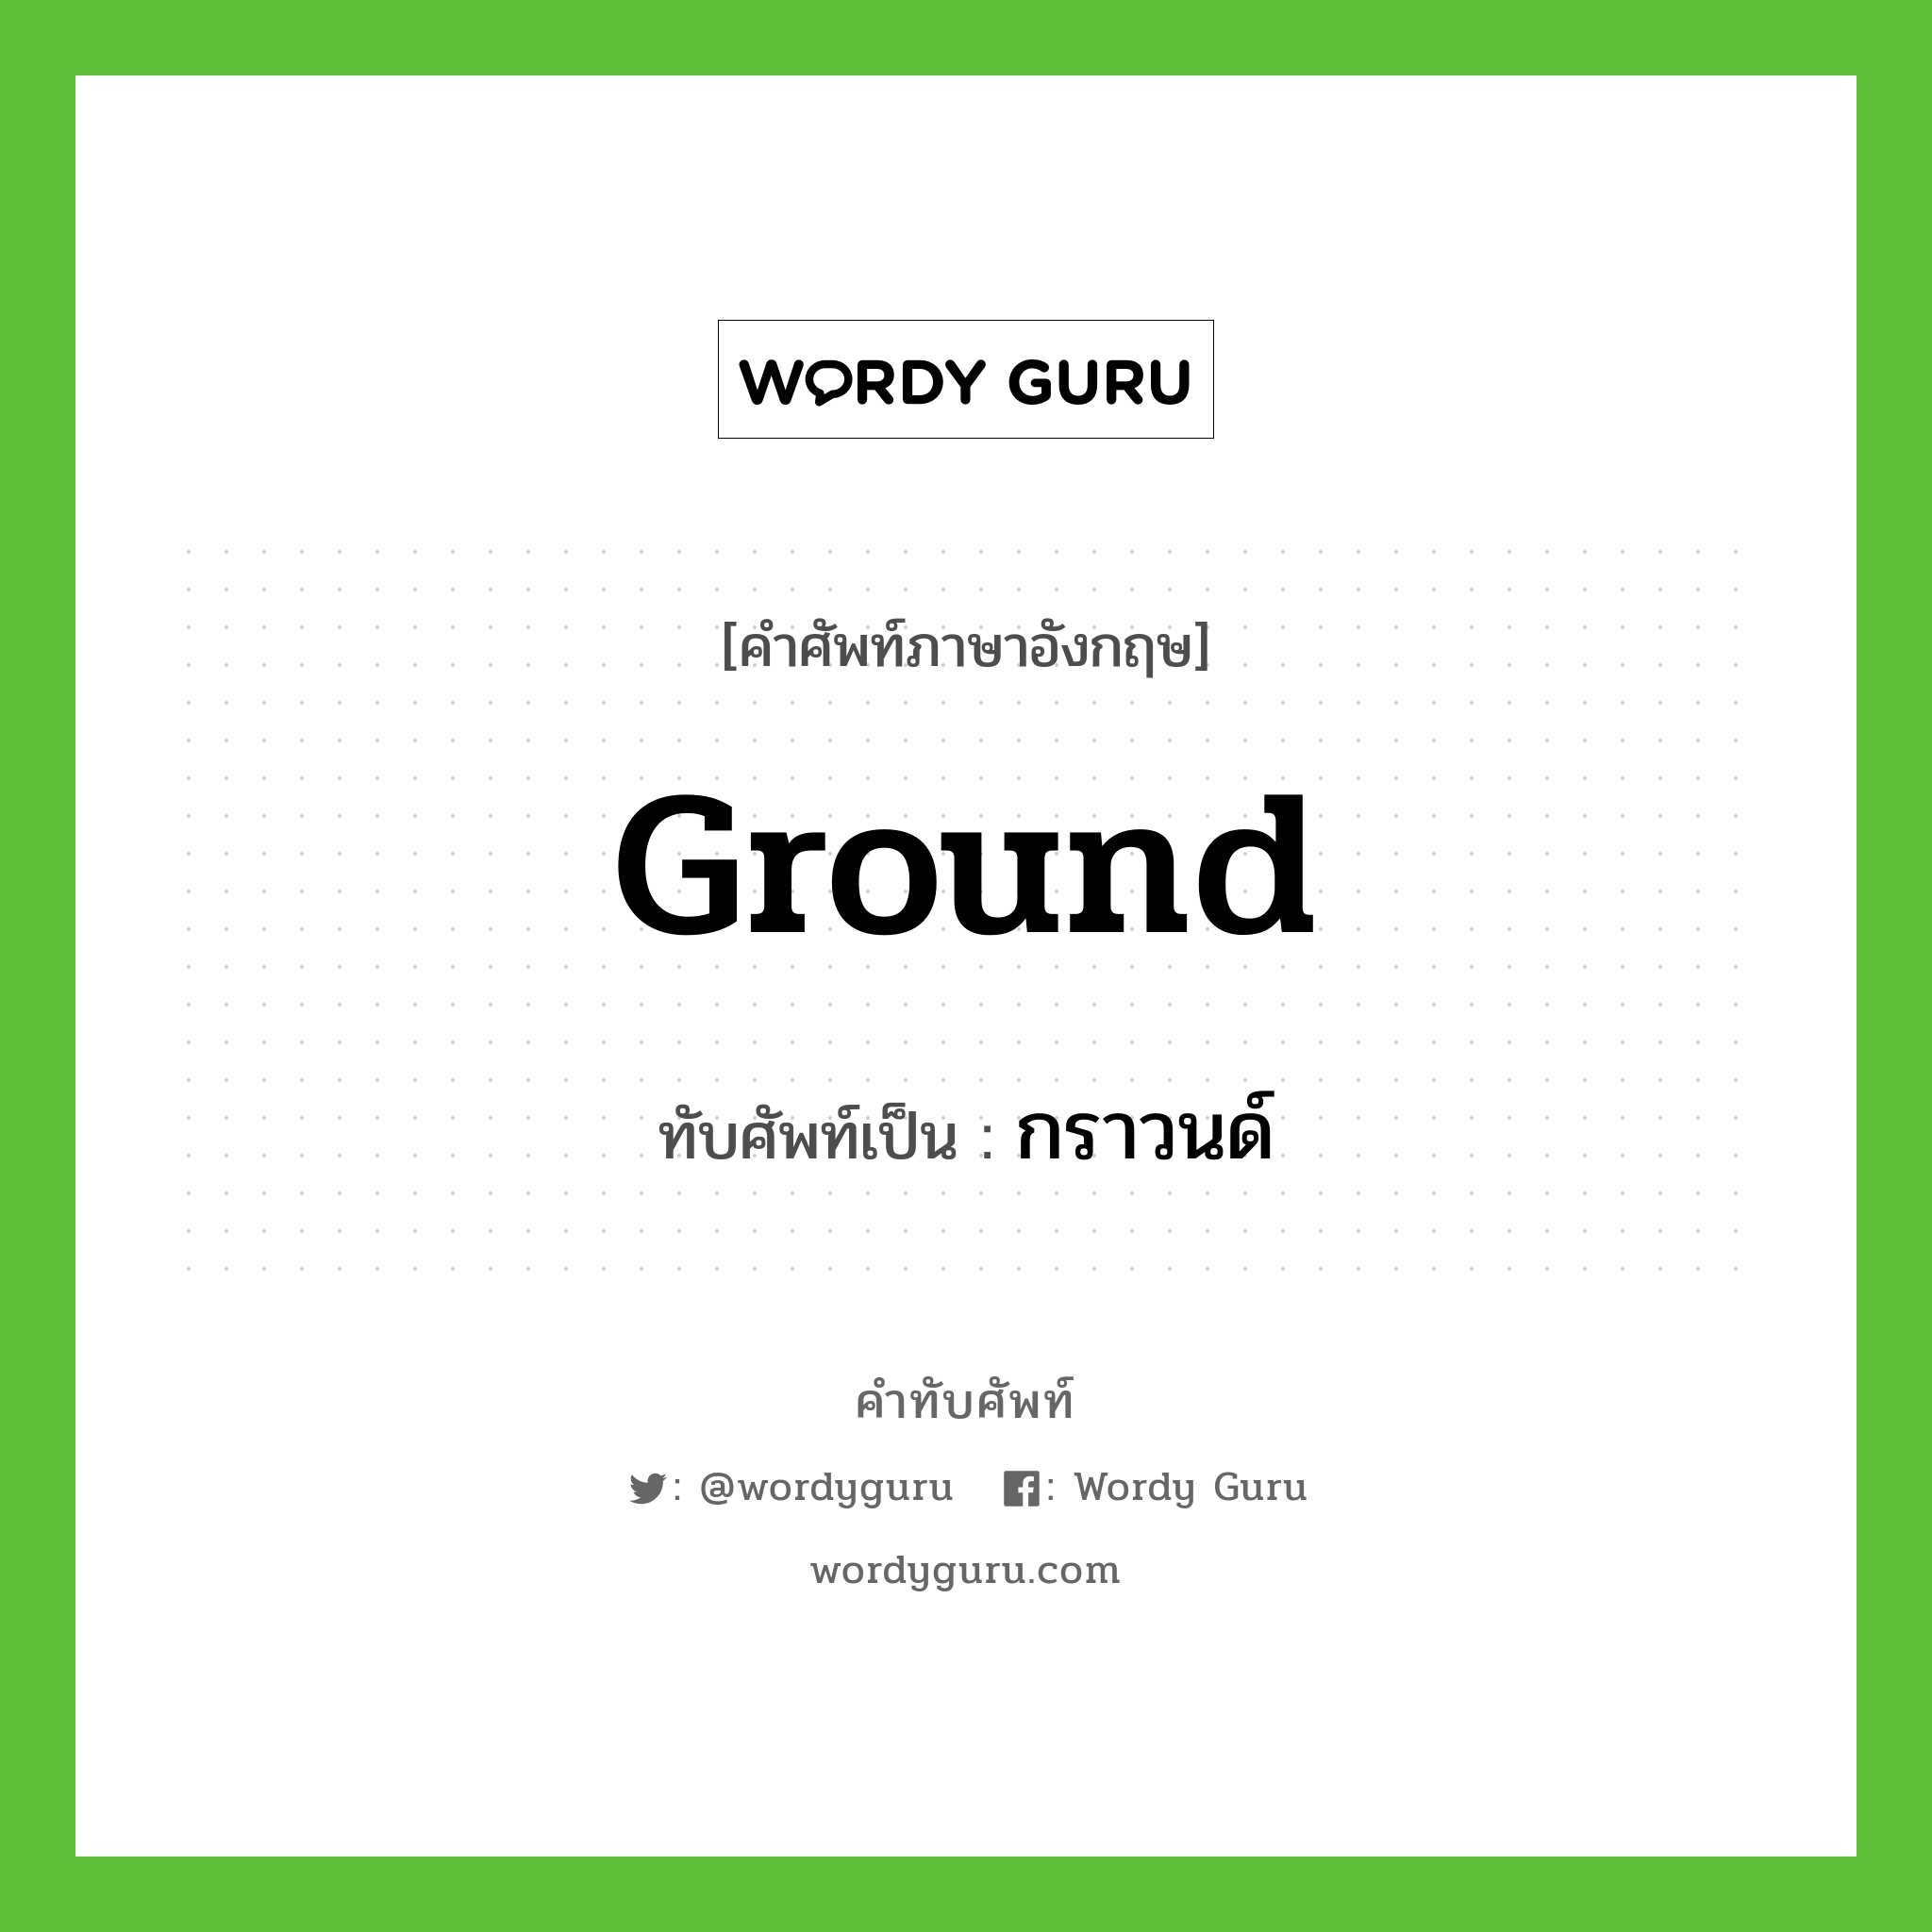 ground เขียนเป็นคำไทยว่าอะไร?, คำศัพท์ภาษาอังกฤษ ground ทับศัพท์เป็น กราวนด์